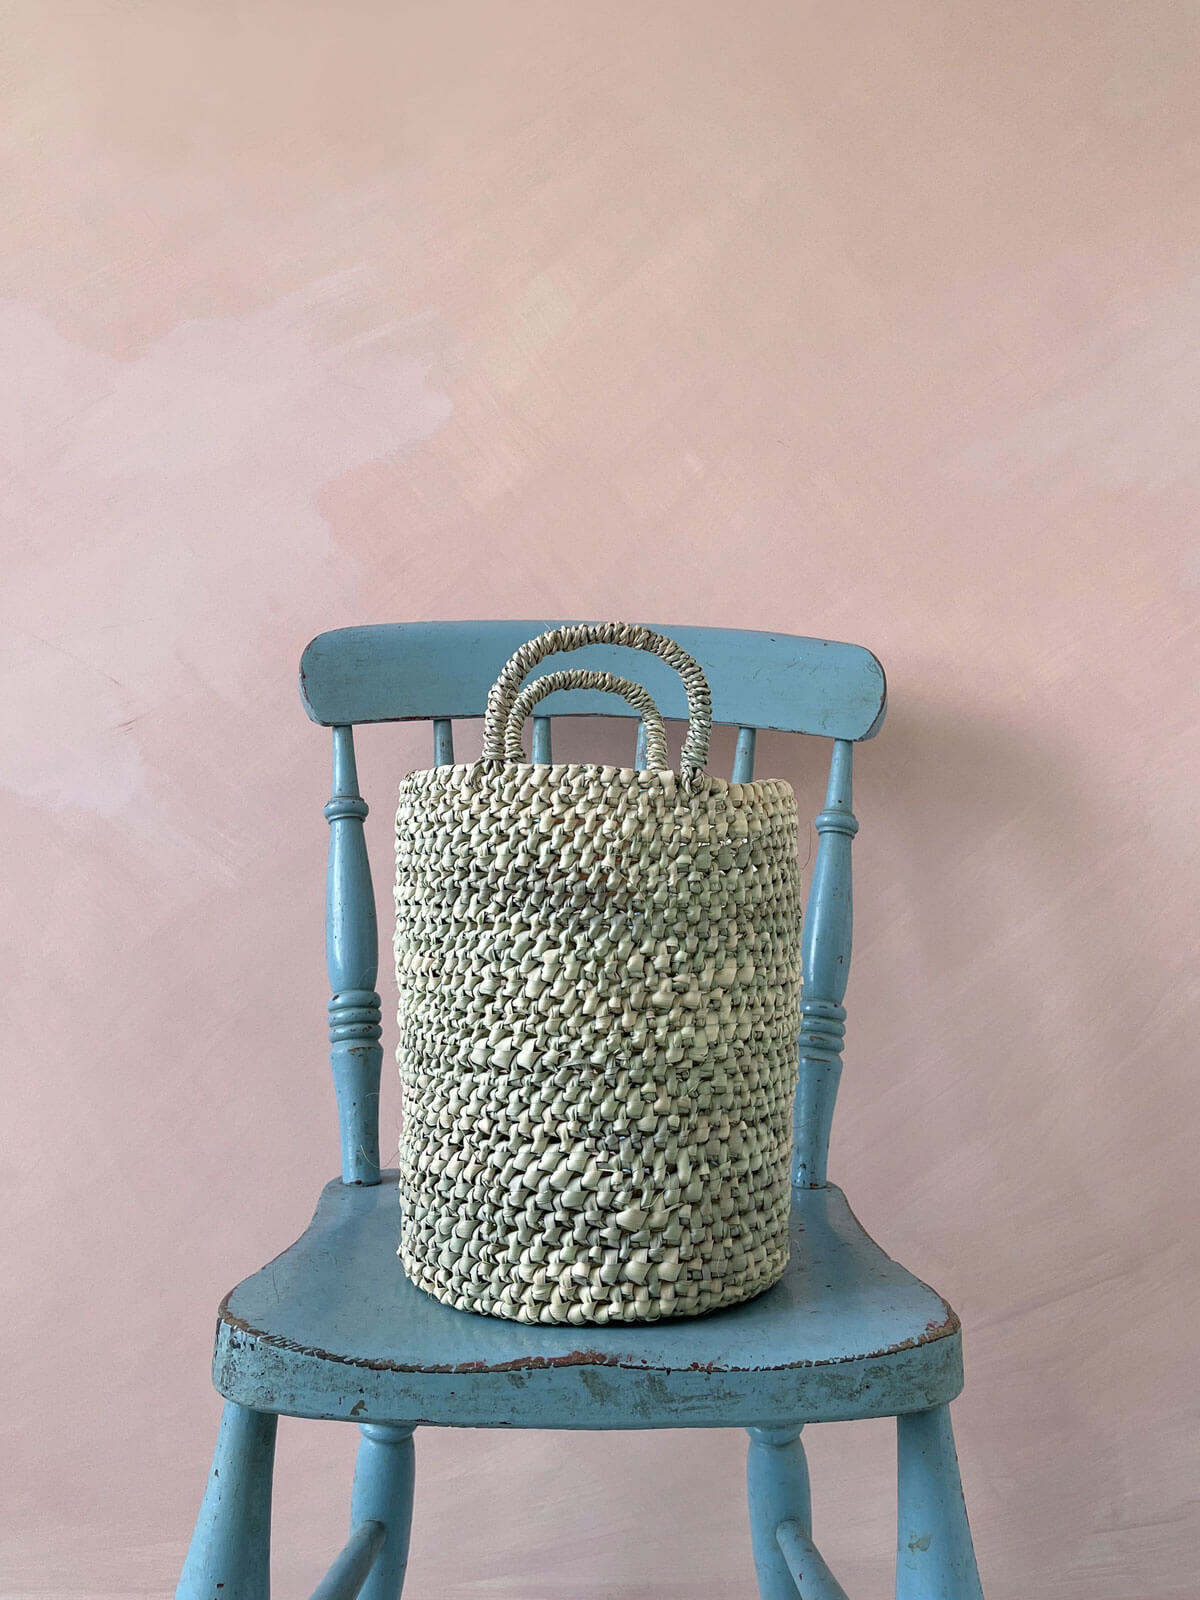 Open Weave Nesting Baskets